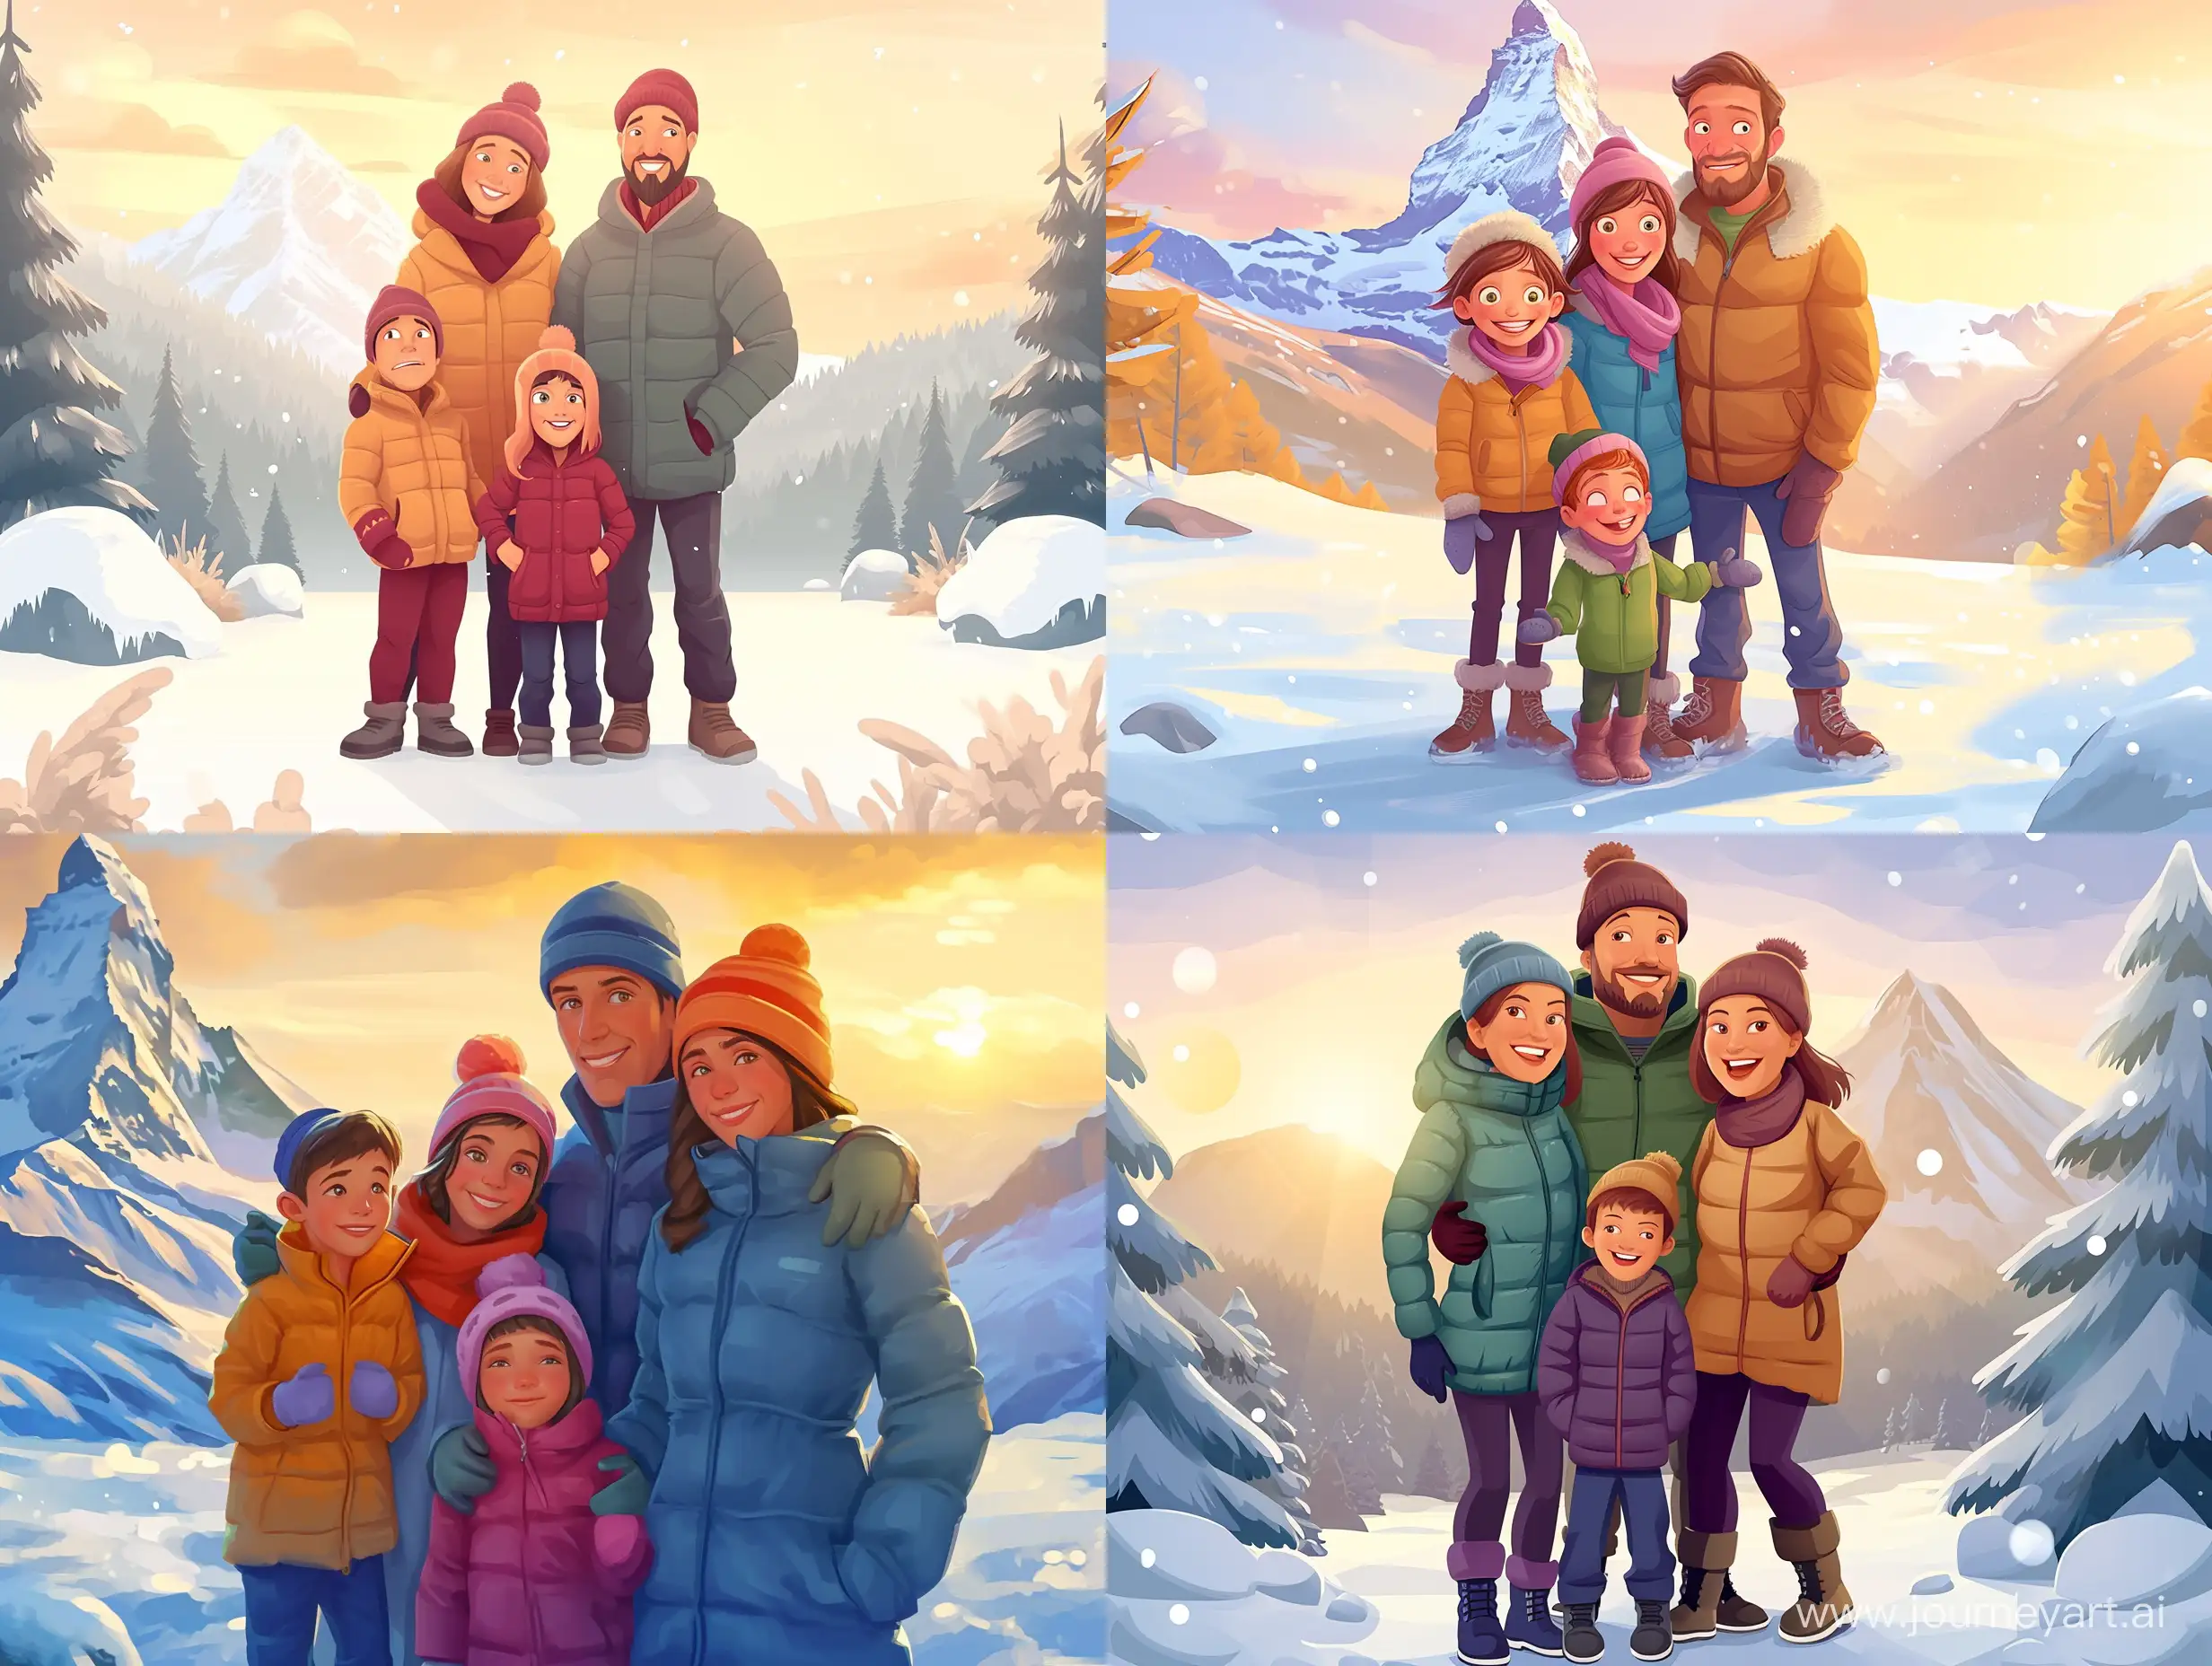 Joyful-Winter-Family-Portrait-with-Snowy-Mountain-View